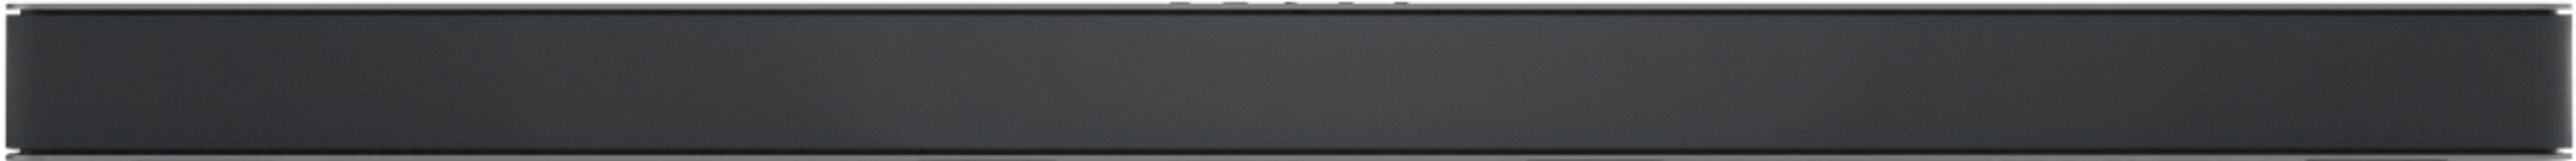 VIZIO Barra de sonido prémium M-Series 5.1 con Dolby Atmos, DTS:X,  Bluetooth, subwoofer inalámbrico y compatibilidad con Alexa, modelo  M51ax-J6